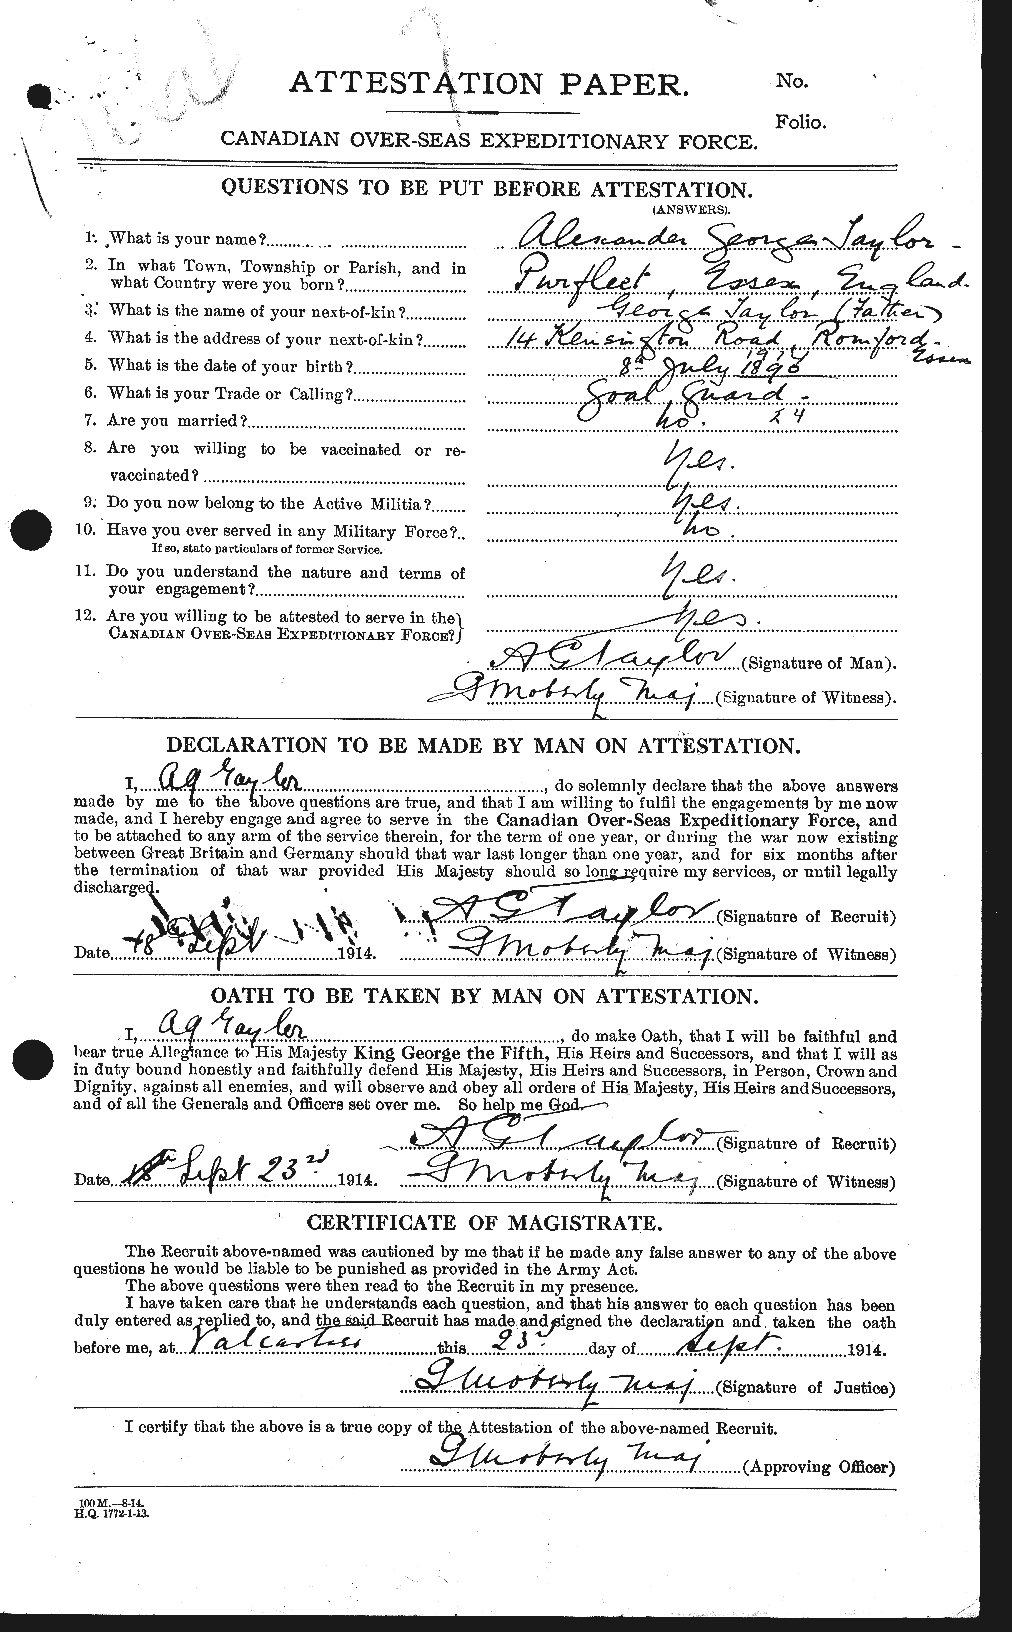 Dossiers du Personnel de la Première Guerre mondiale - CEC 626152a